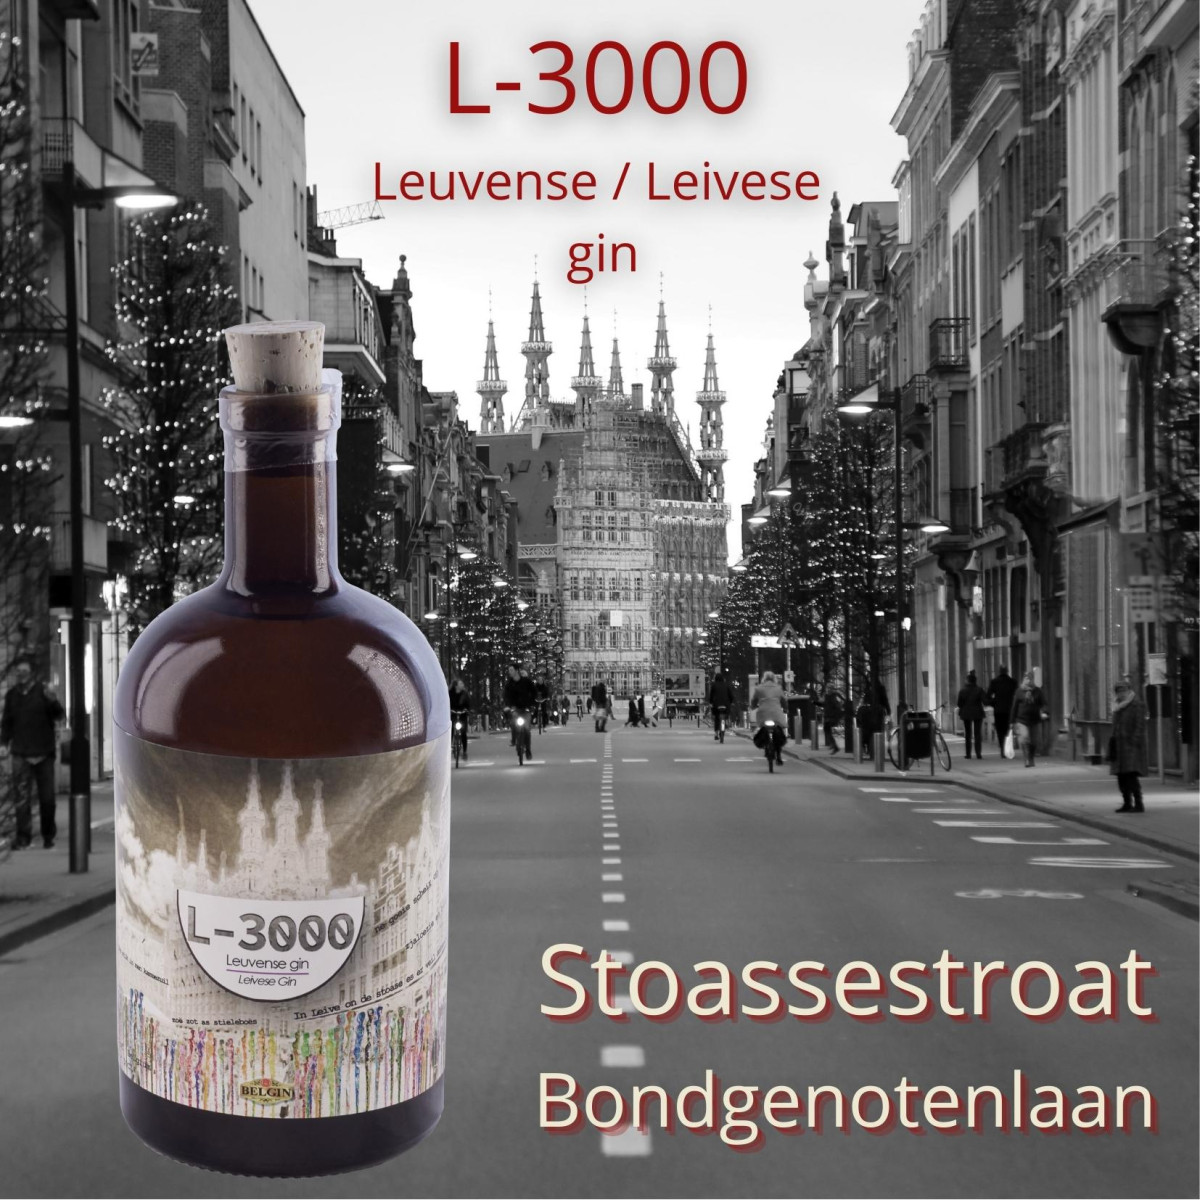 L-3000 Leuvense gin / Leivese gin